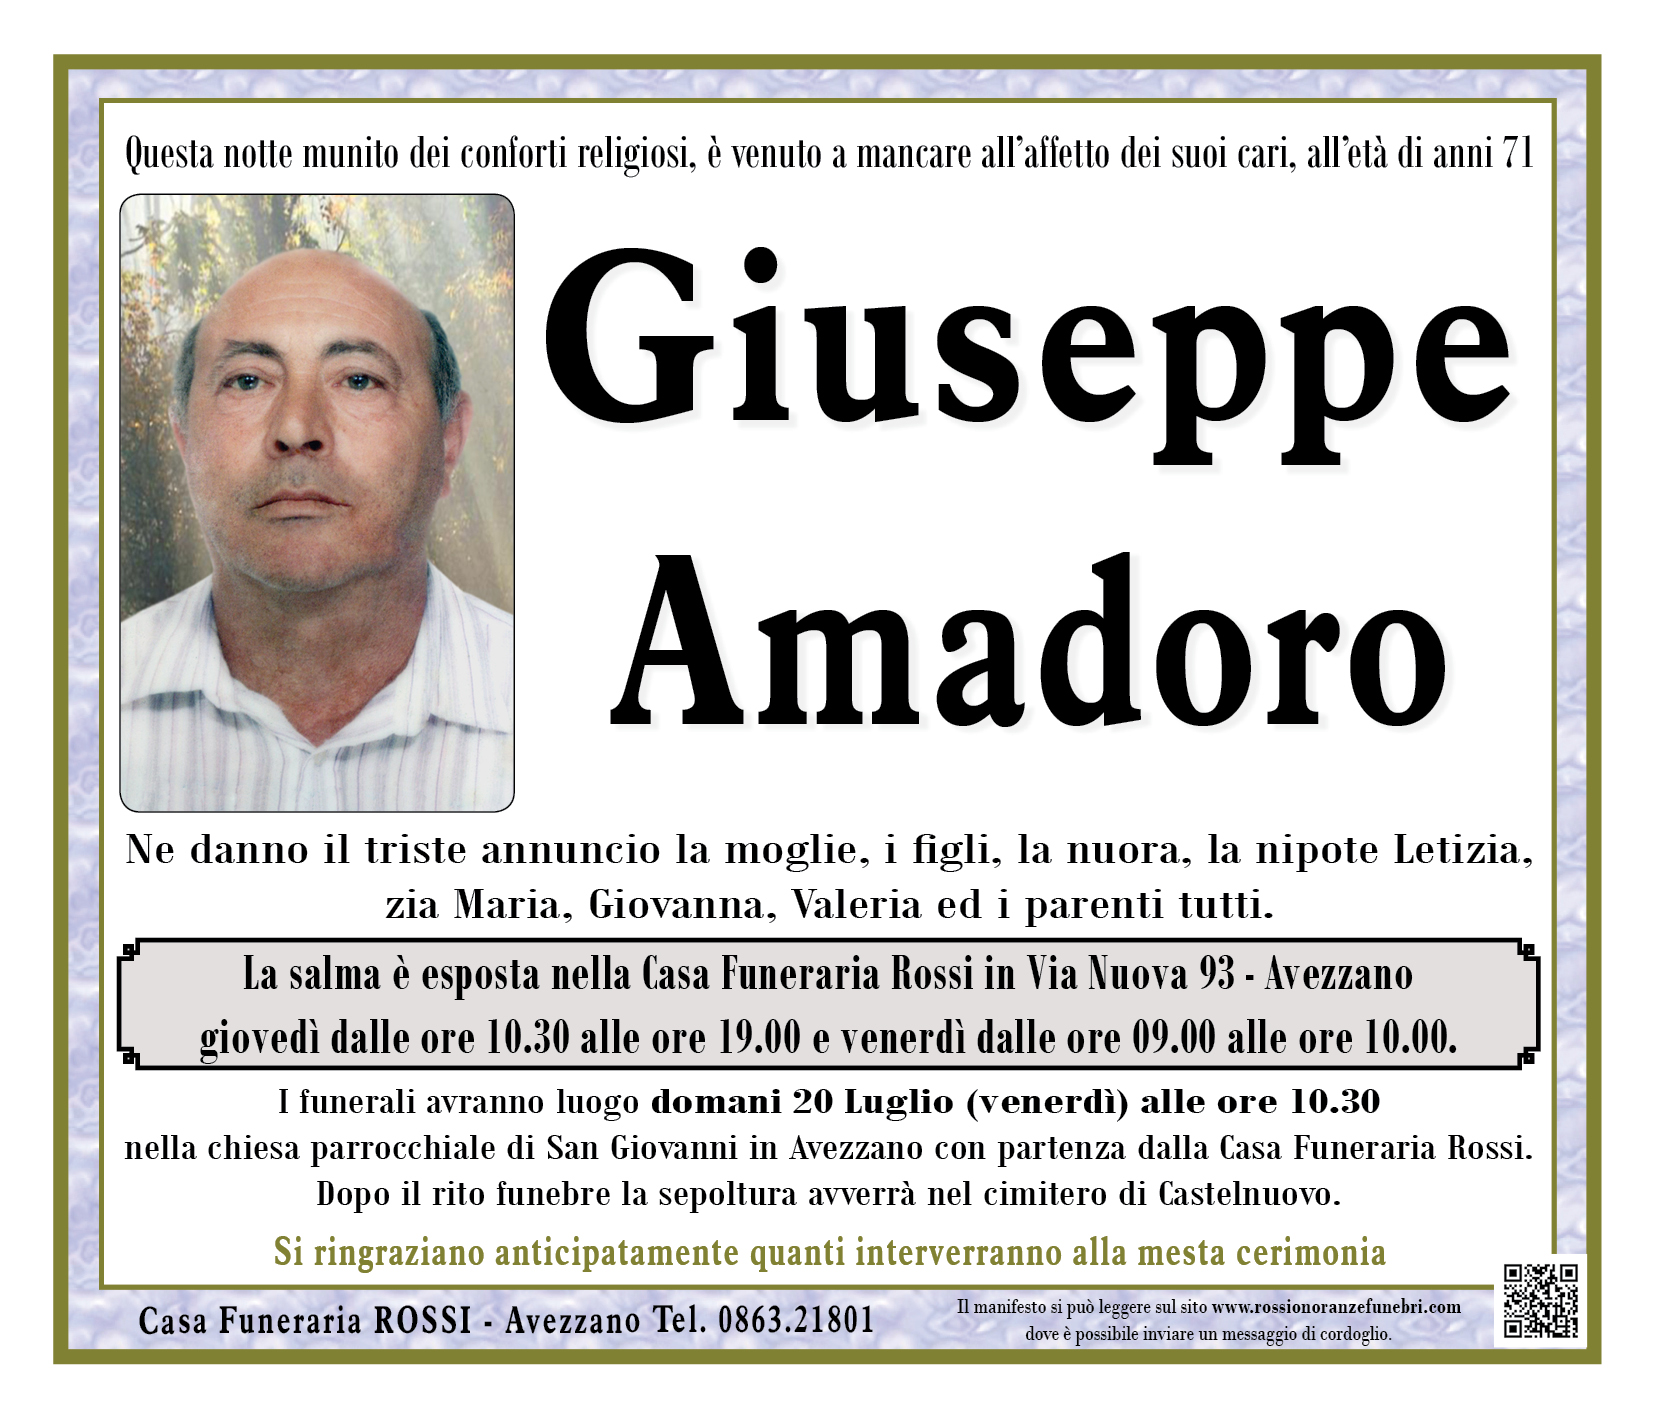 Giuseppe Amadoro